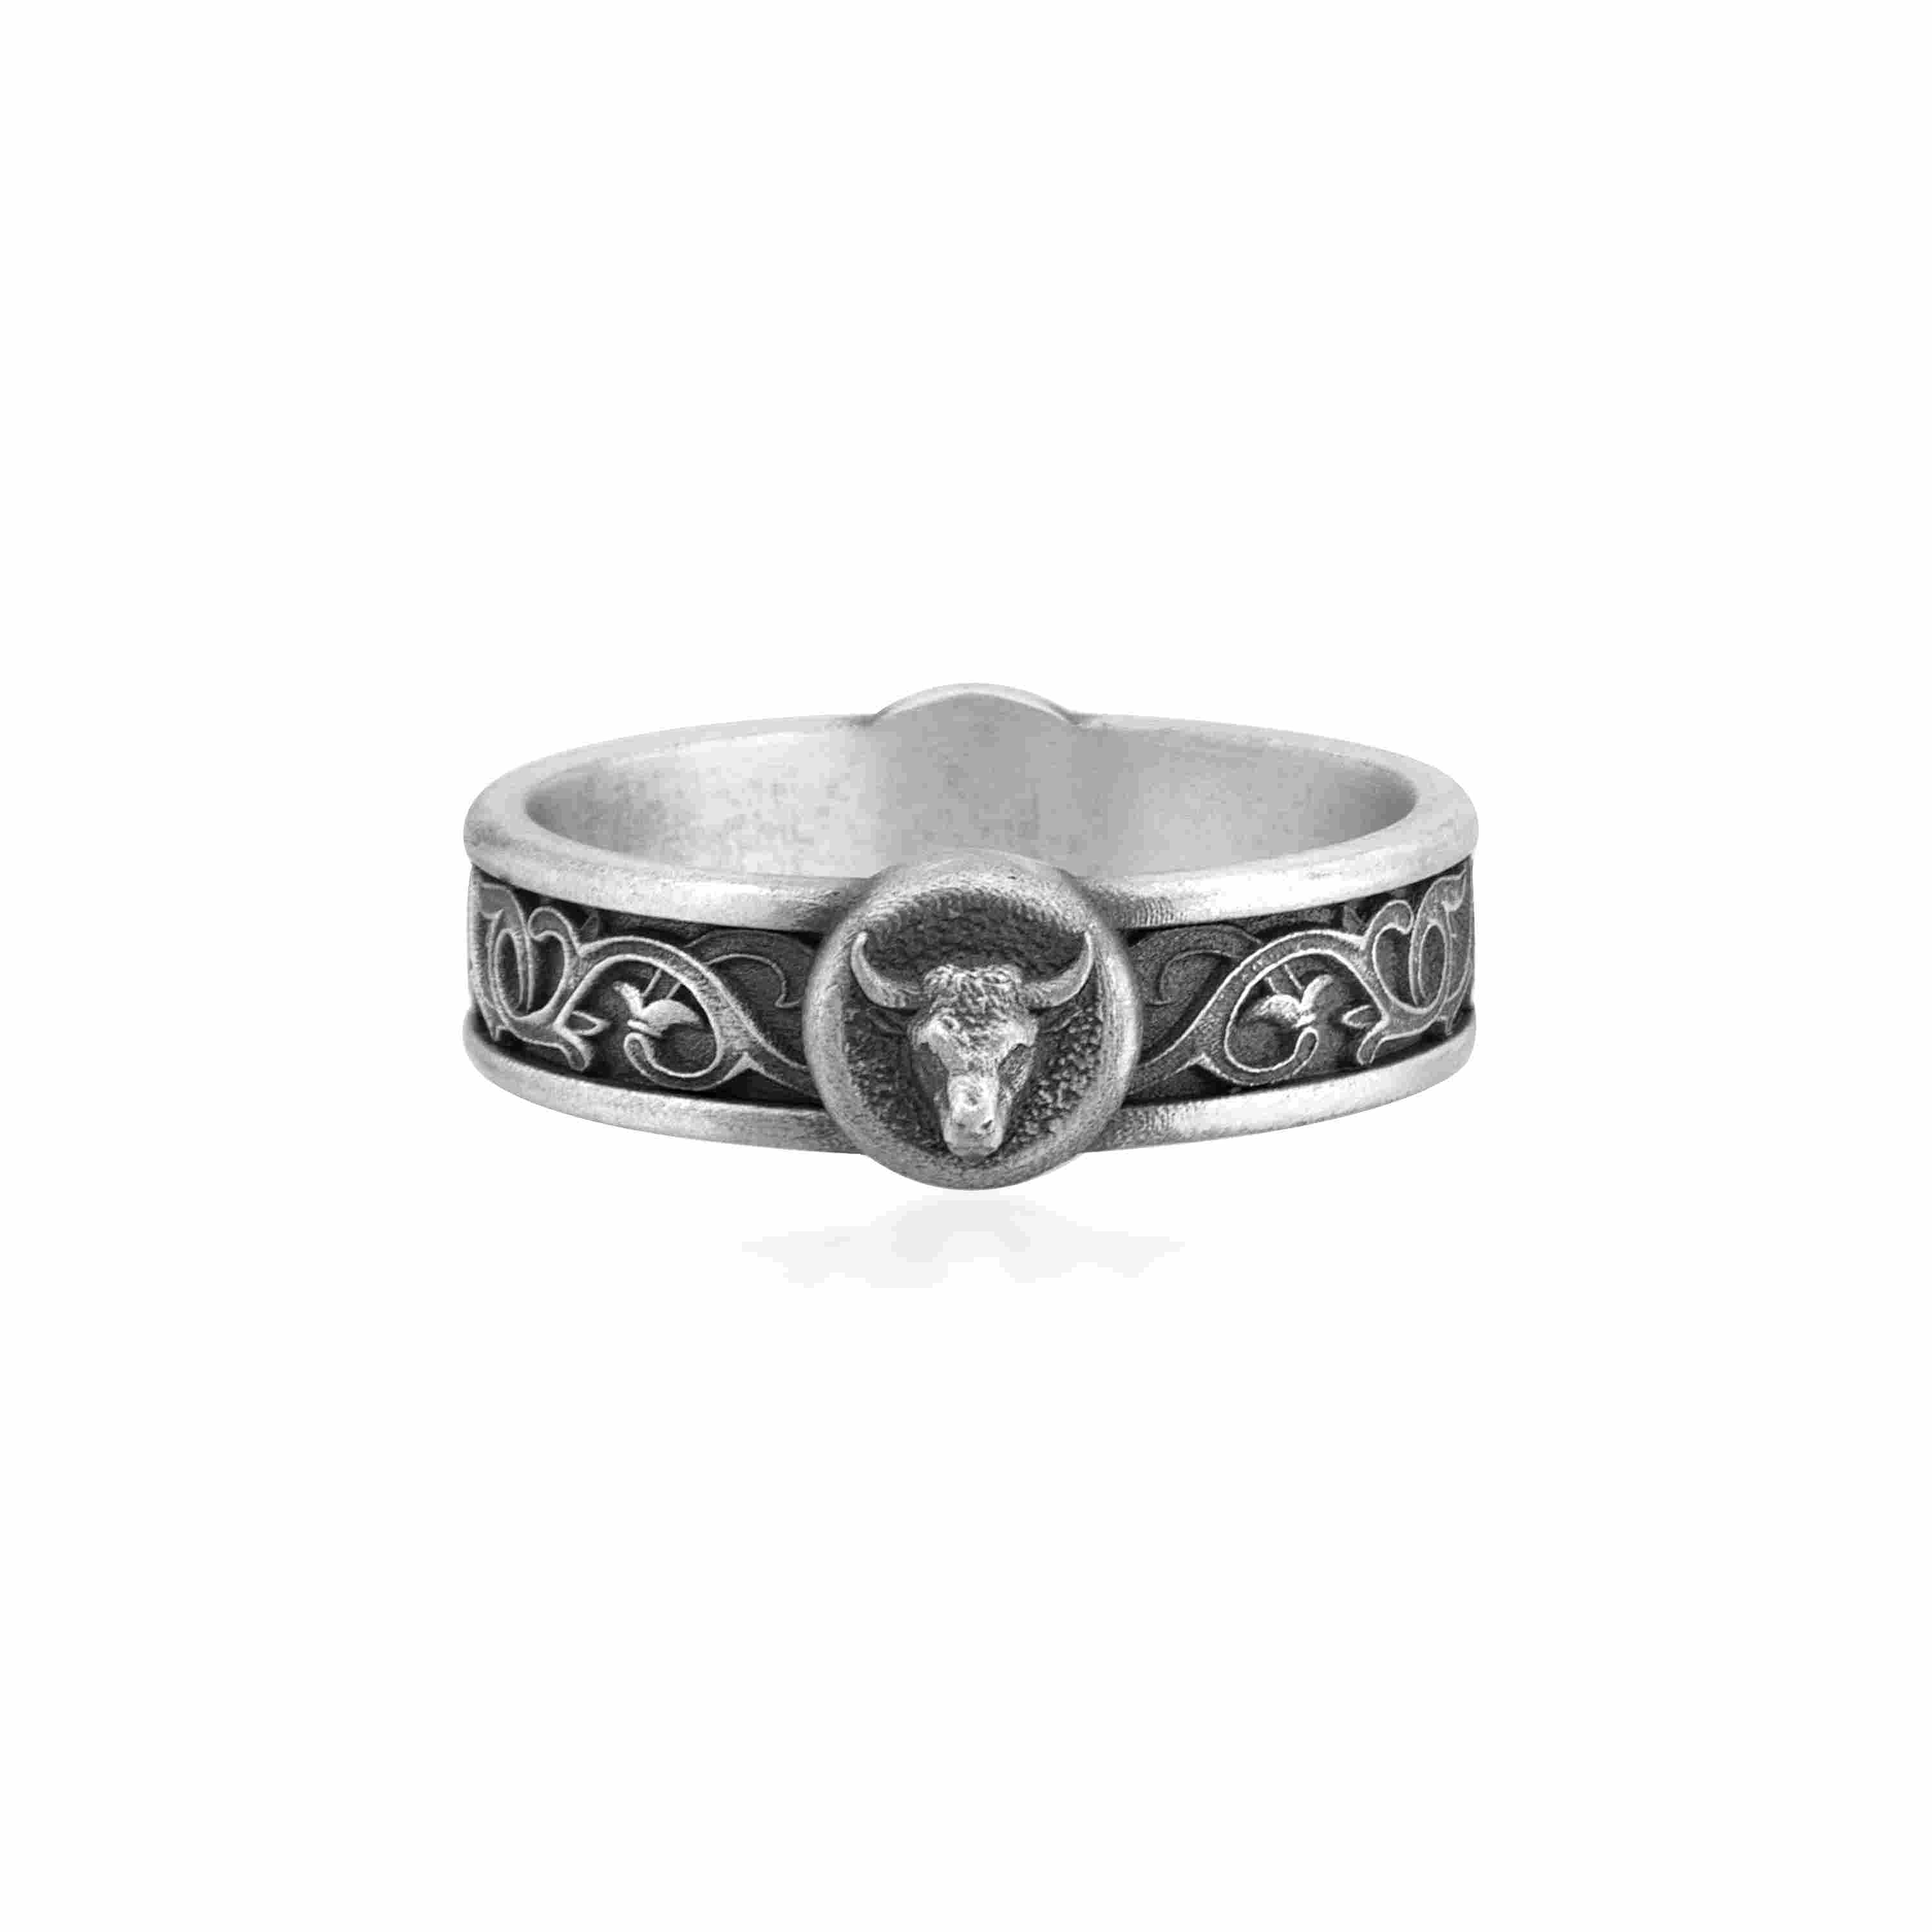 Taurus bull band ring